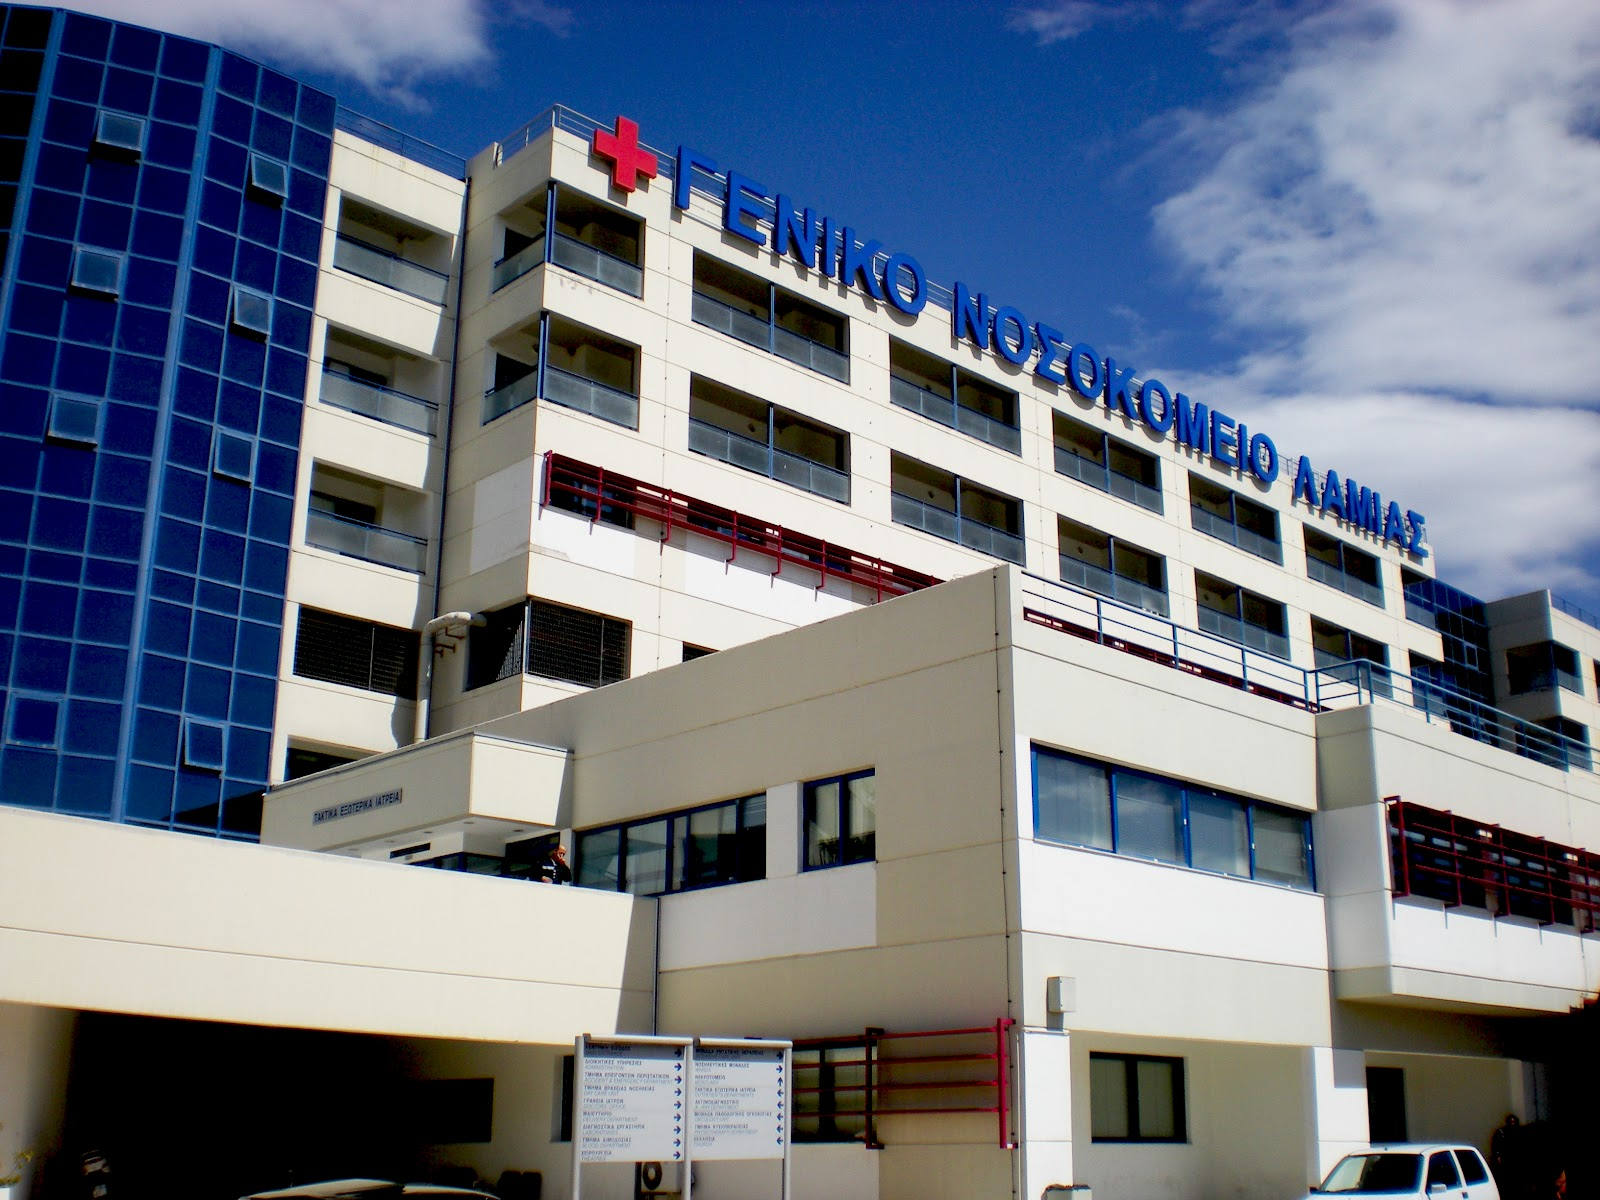 Ληστεία στο Νοσοκομείο Λαμίας πανομοιότυπη με Αγ. Σάββα & νοσοκομείο του Βόλου